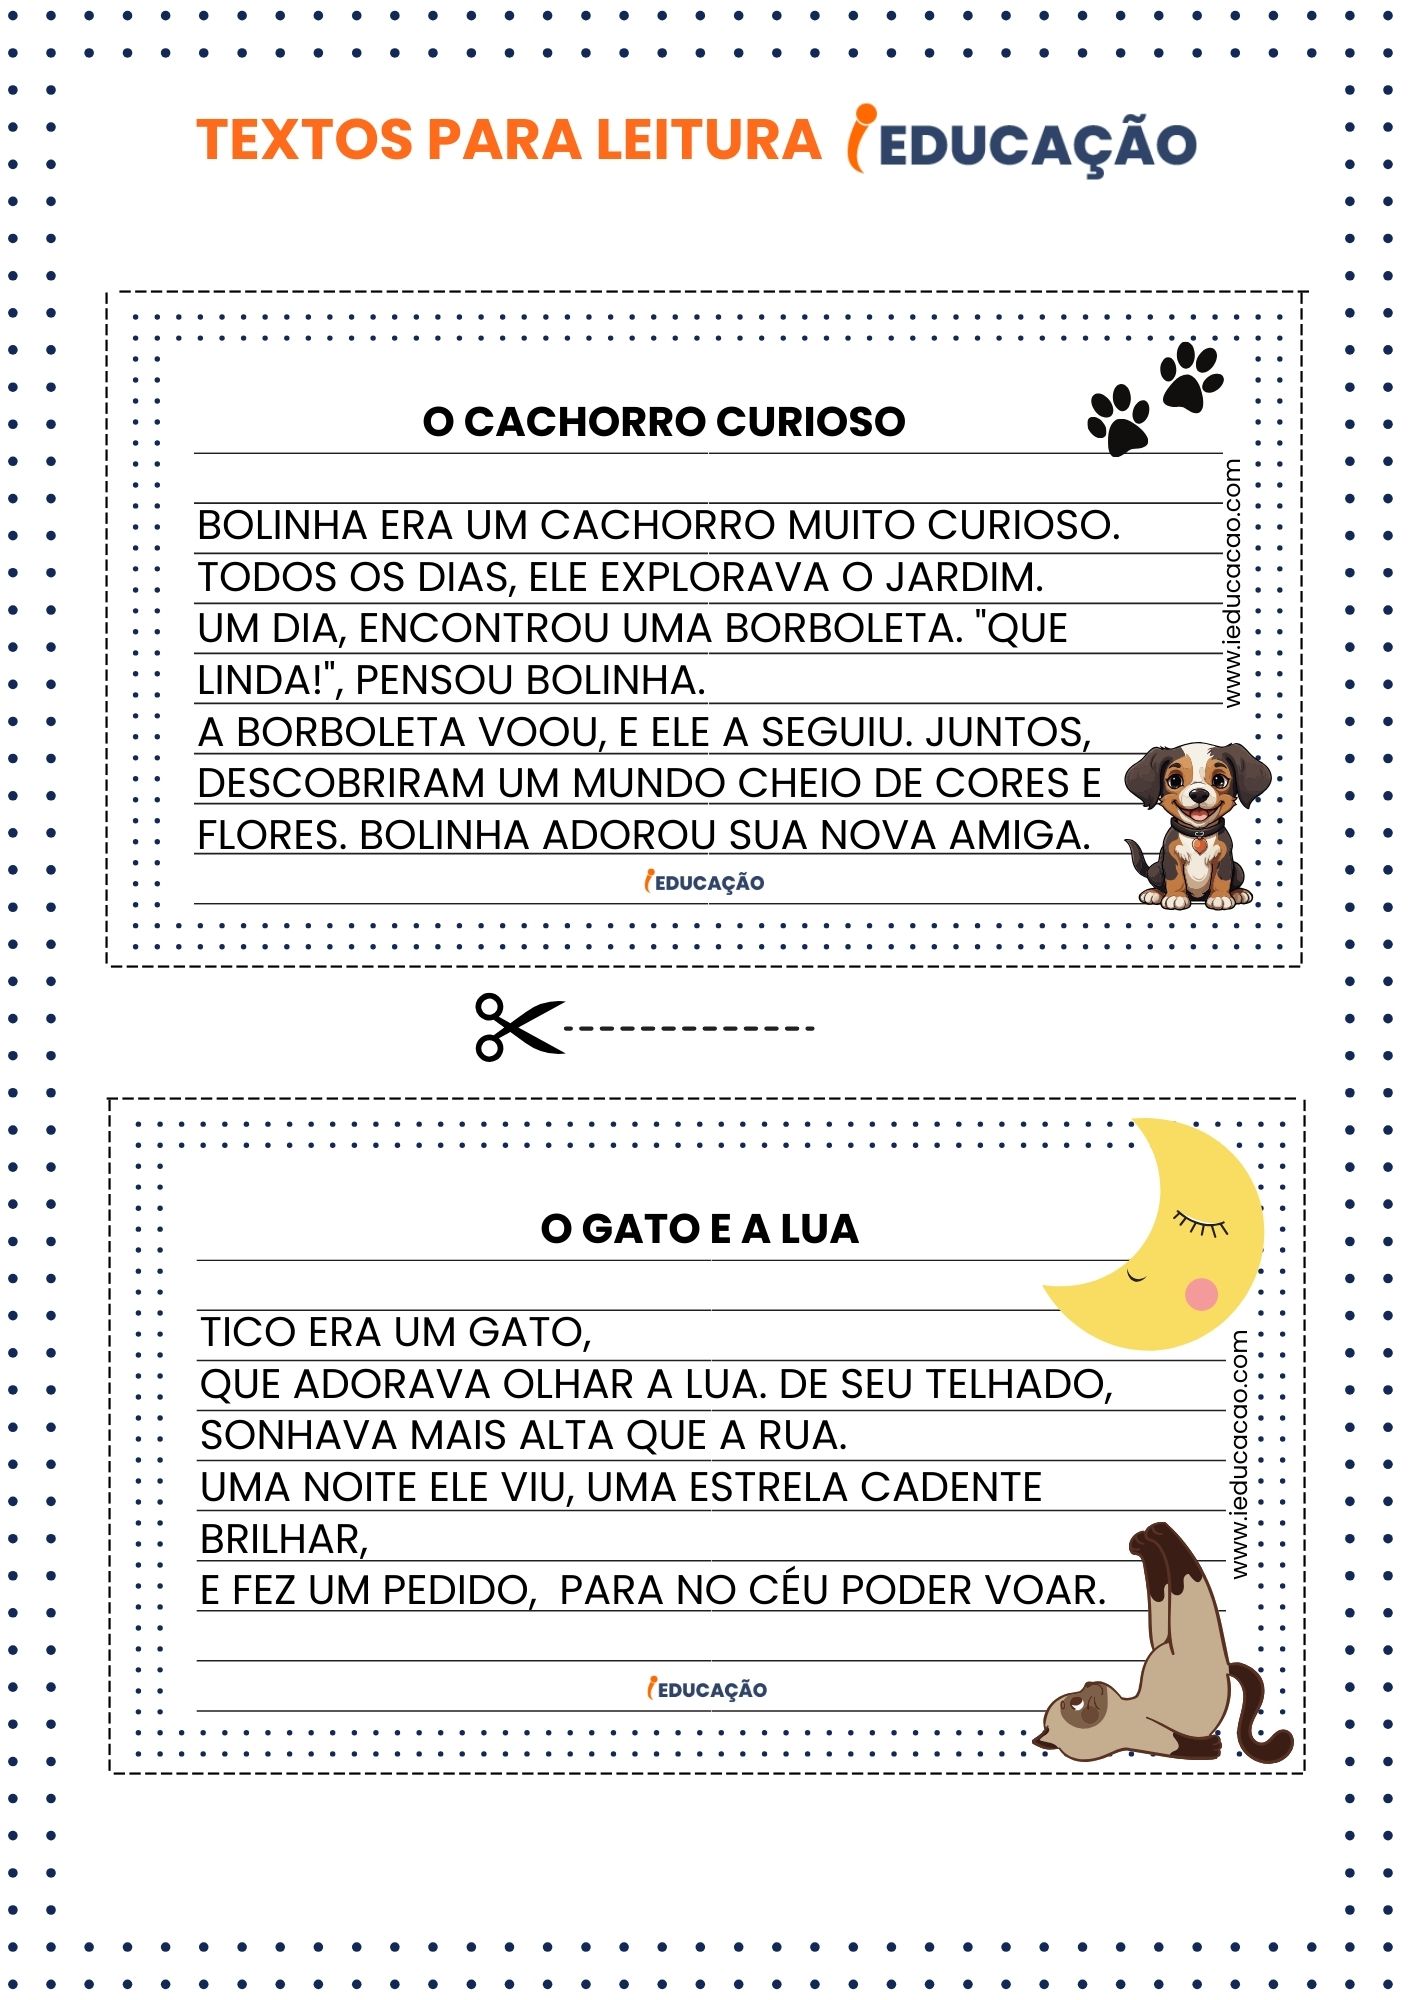 Textos para Leitura - O cachorro curioso - iEducação - Atividades de leitura e interpretação.jpg